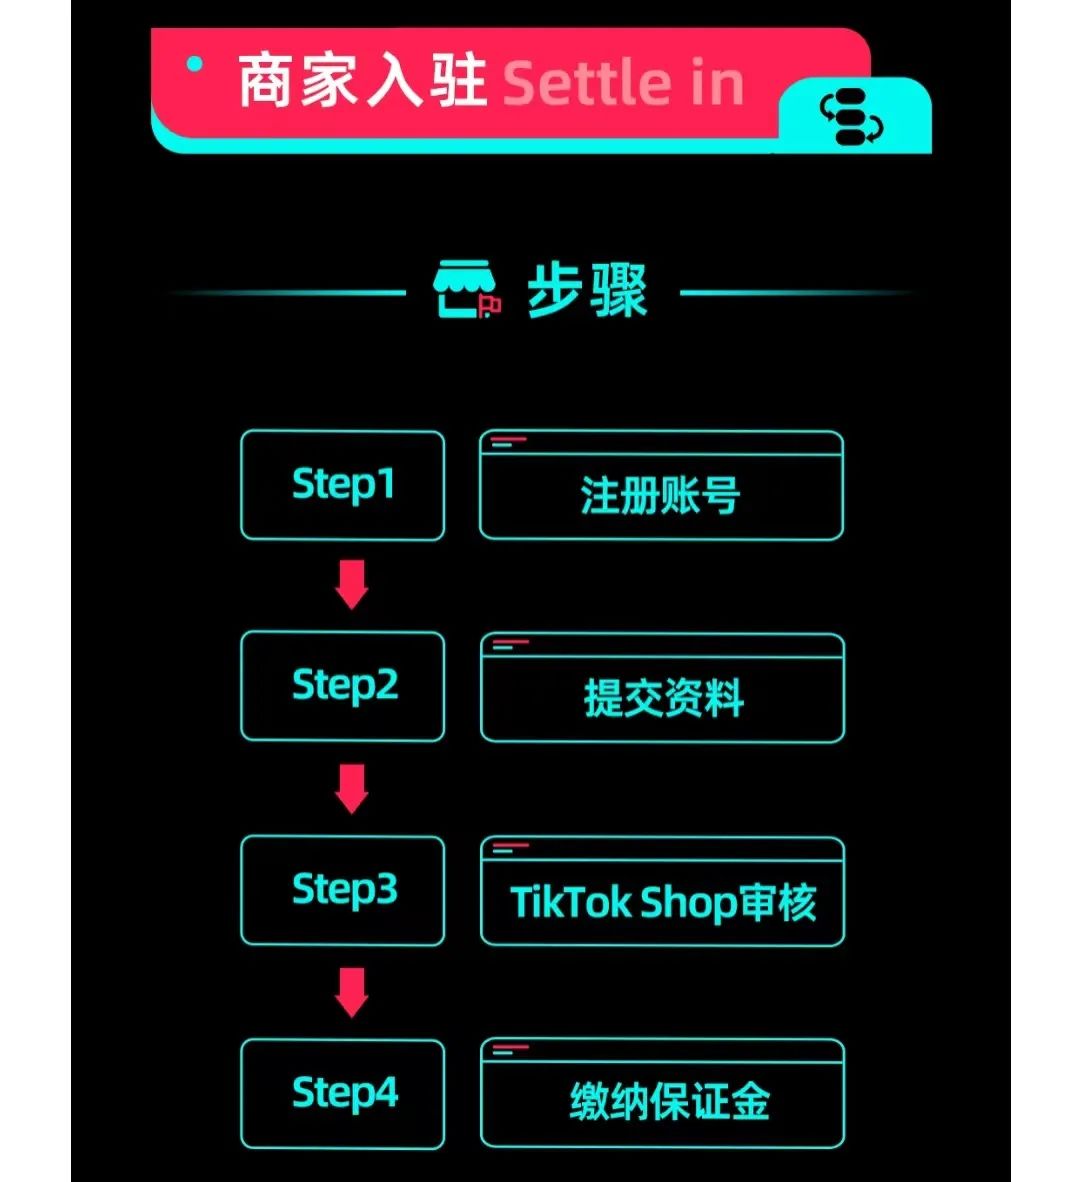 单日卖8677件成爆品！TikTok Shop美国小店(9.4-9.10)Top10榜单